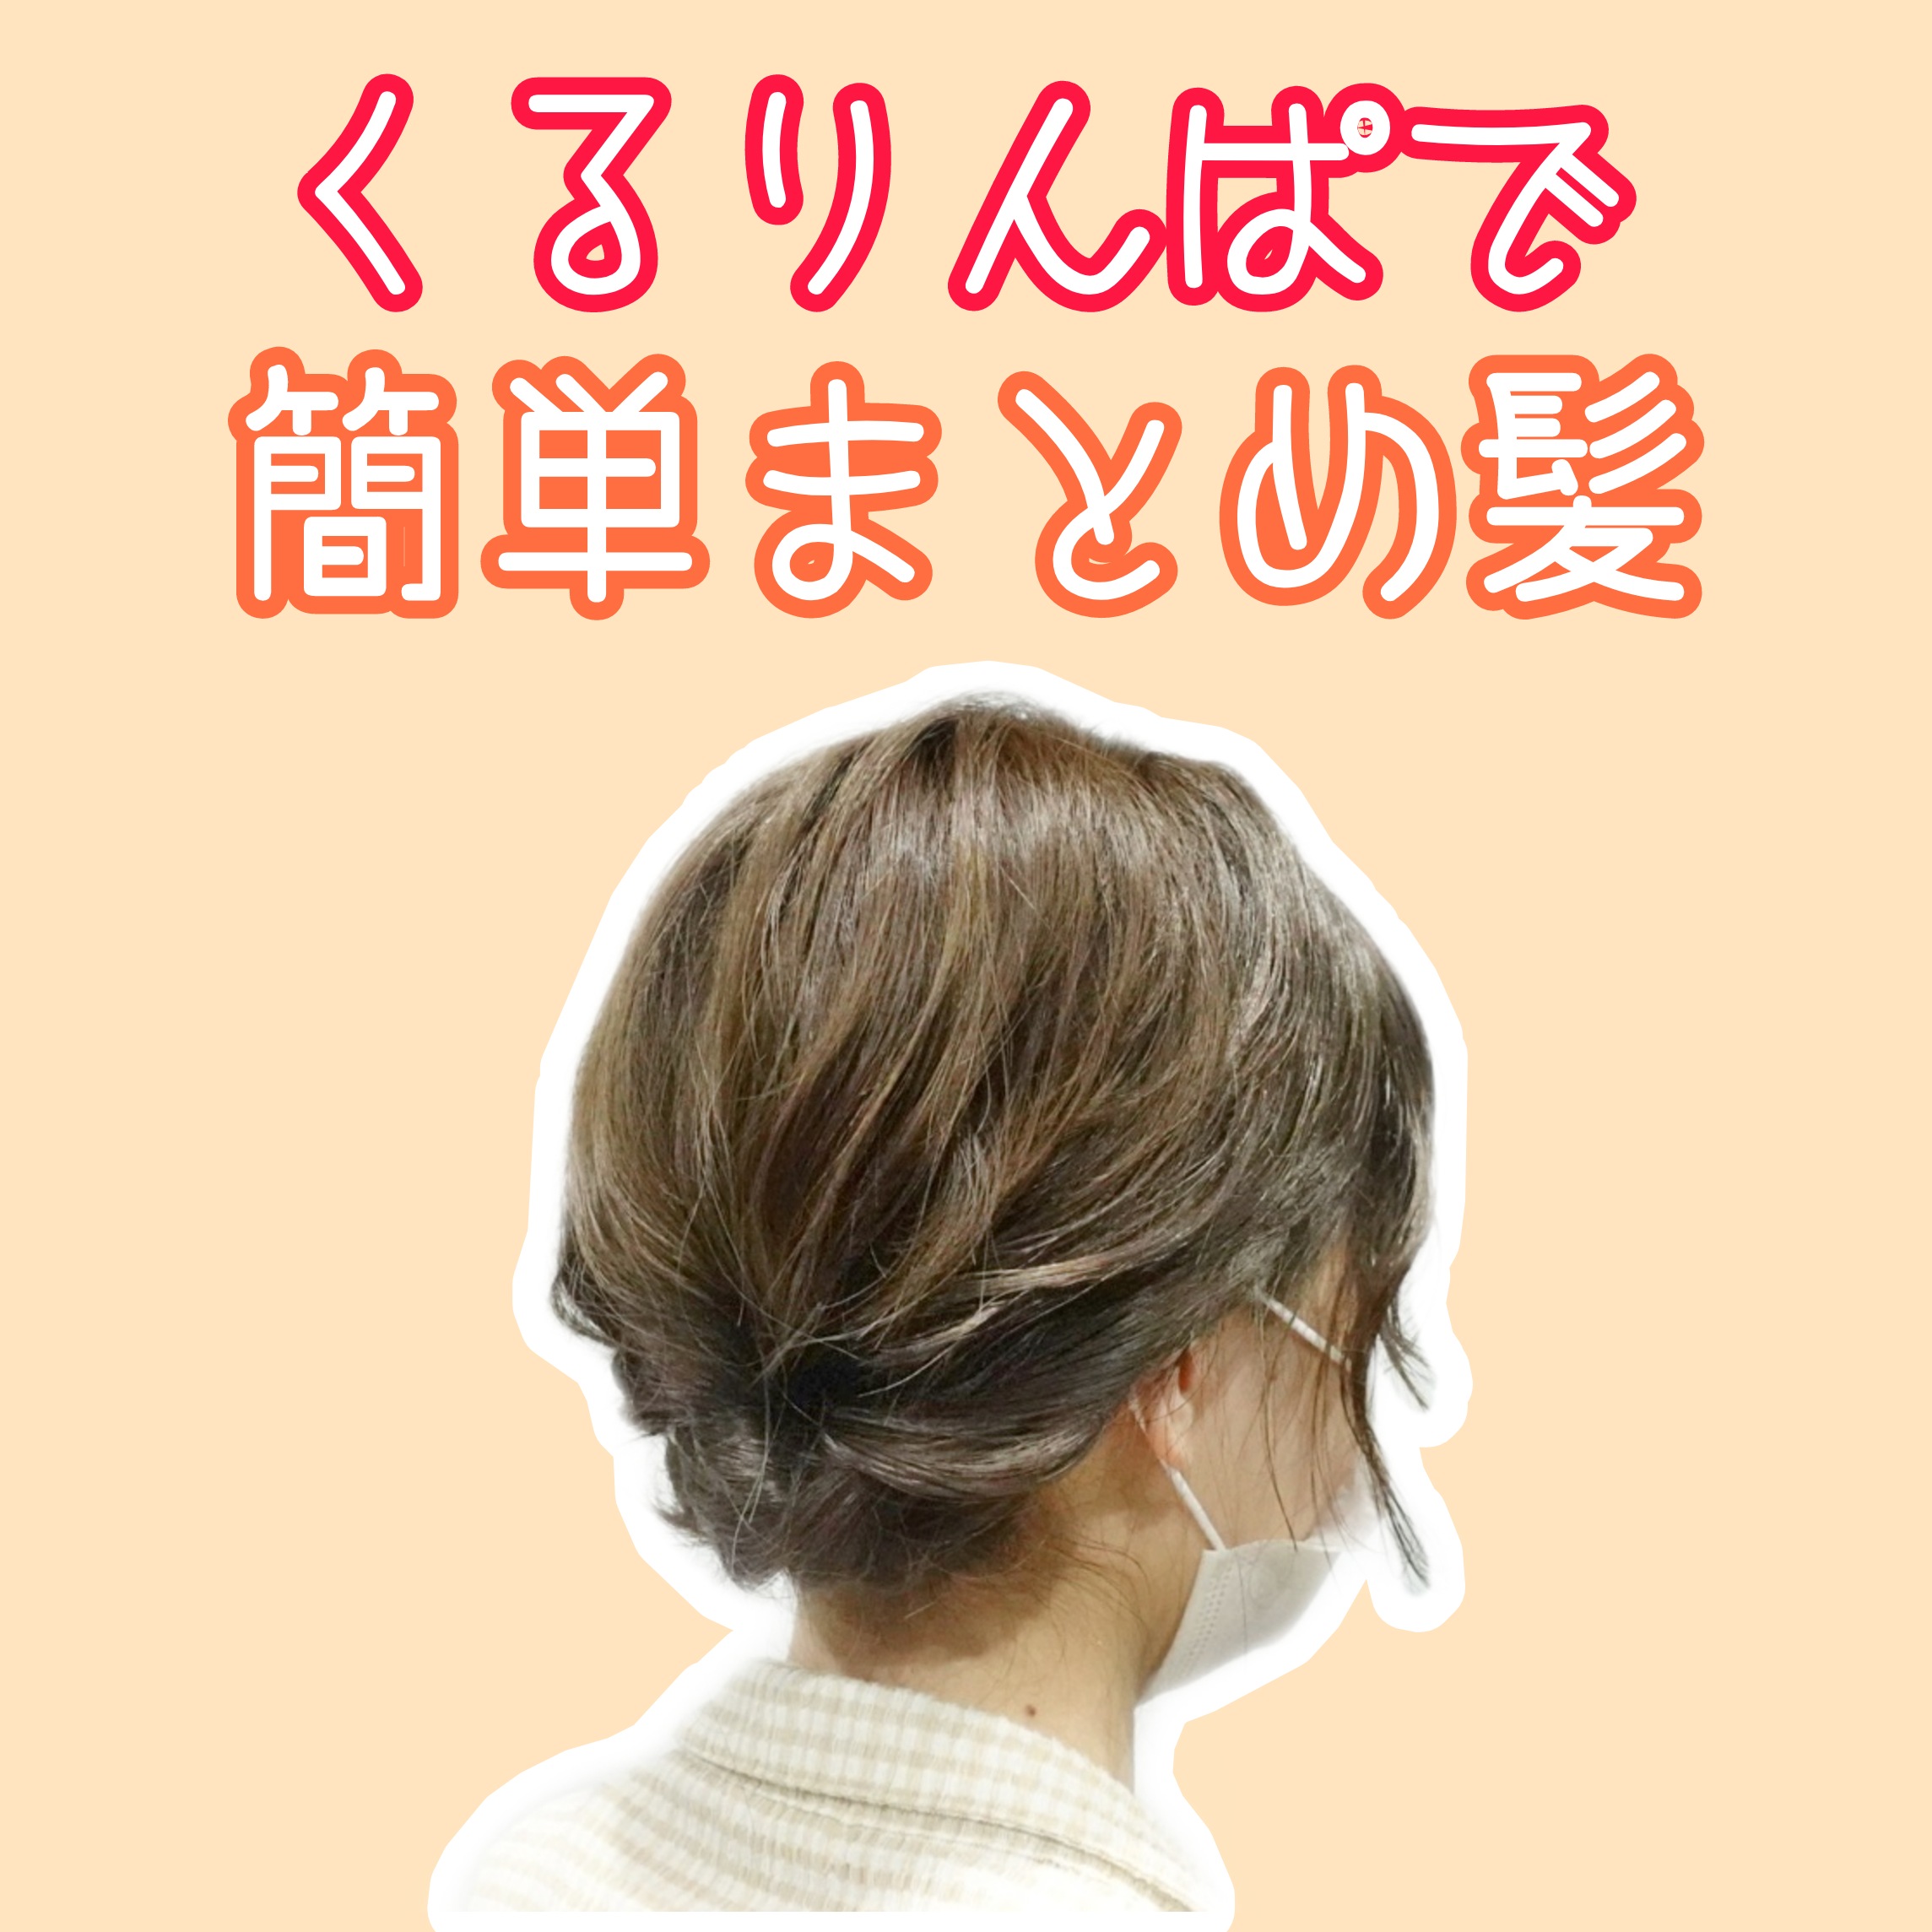 くるりんぱ 簡単まとめ髪 仕事にも使えるミディアム ロングの可愛い美容師ヘアアレンジ動画 Enx